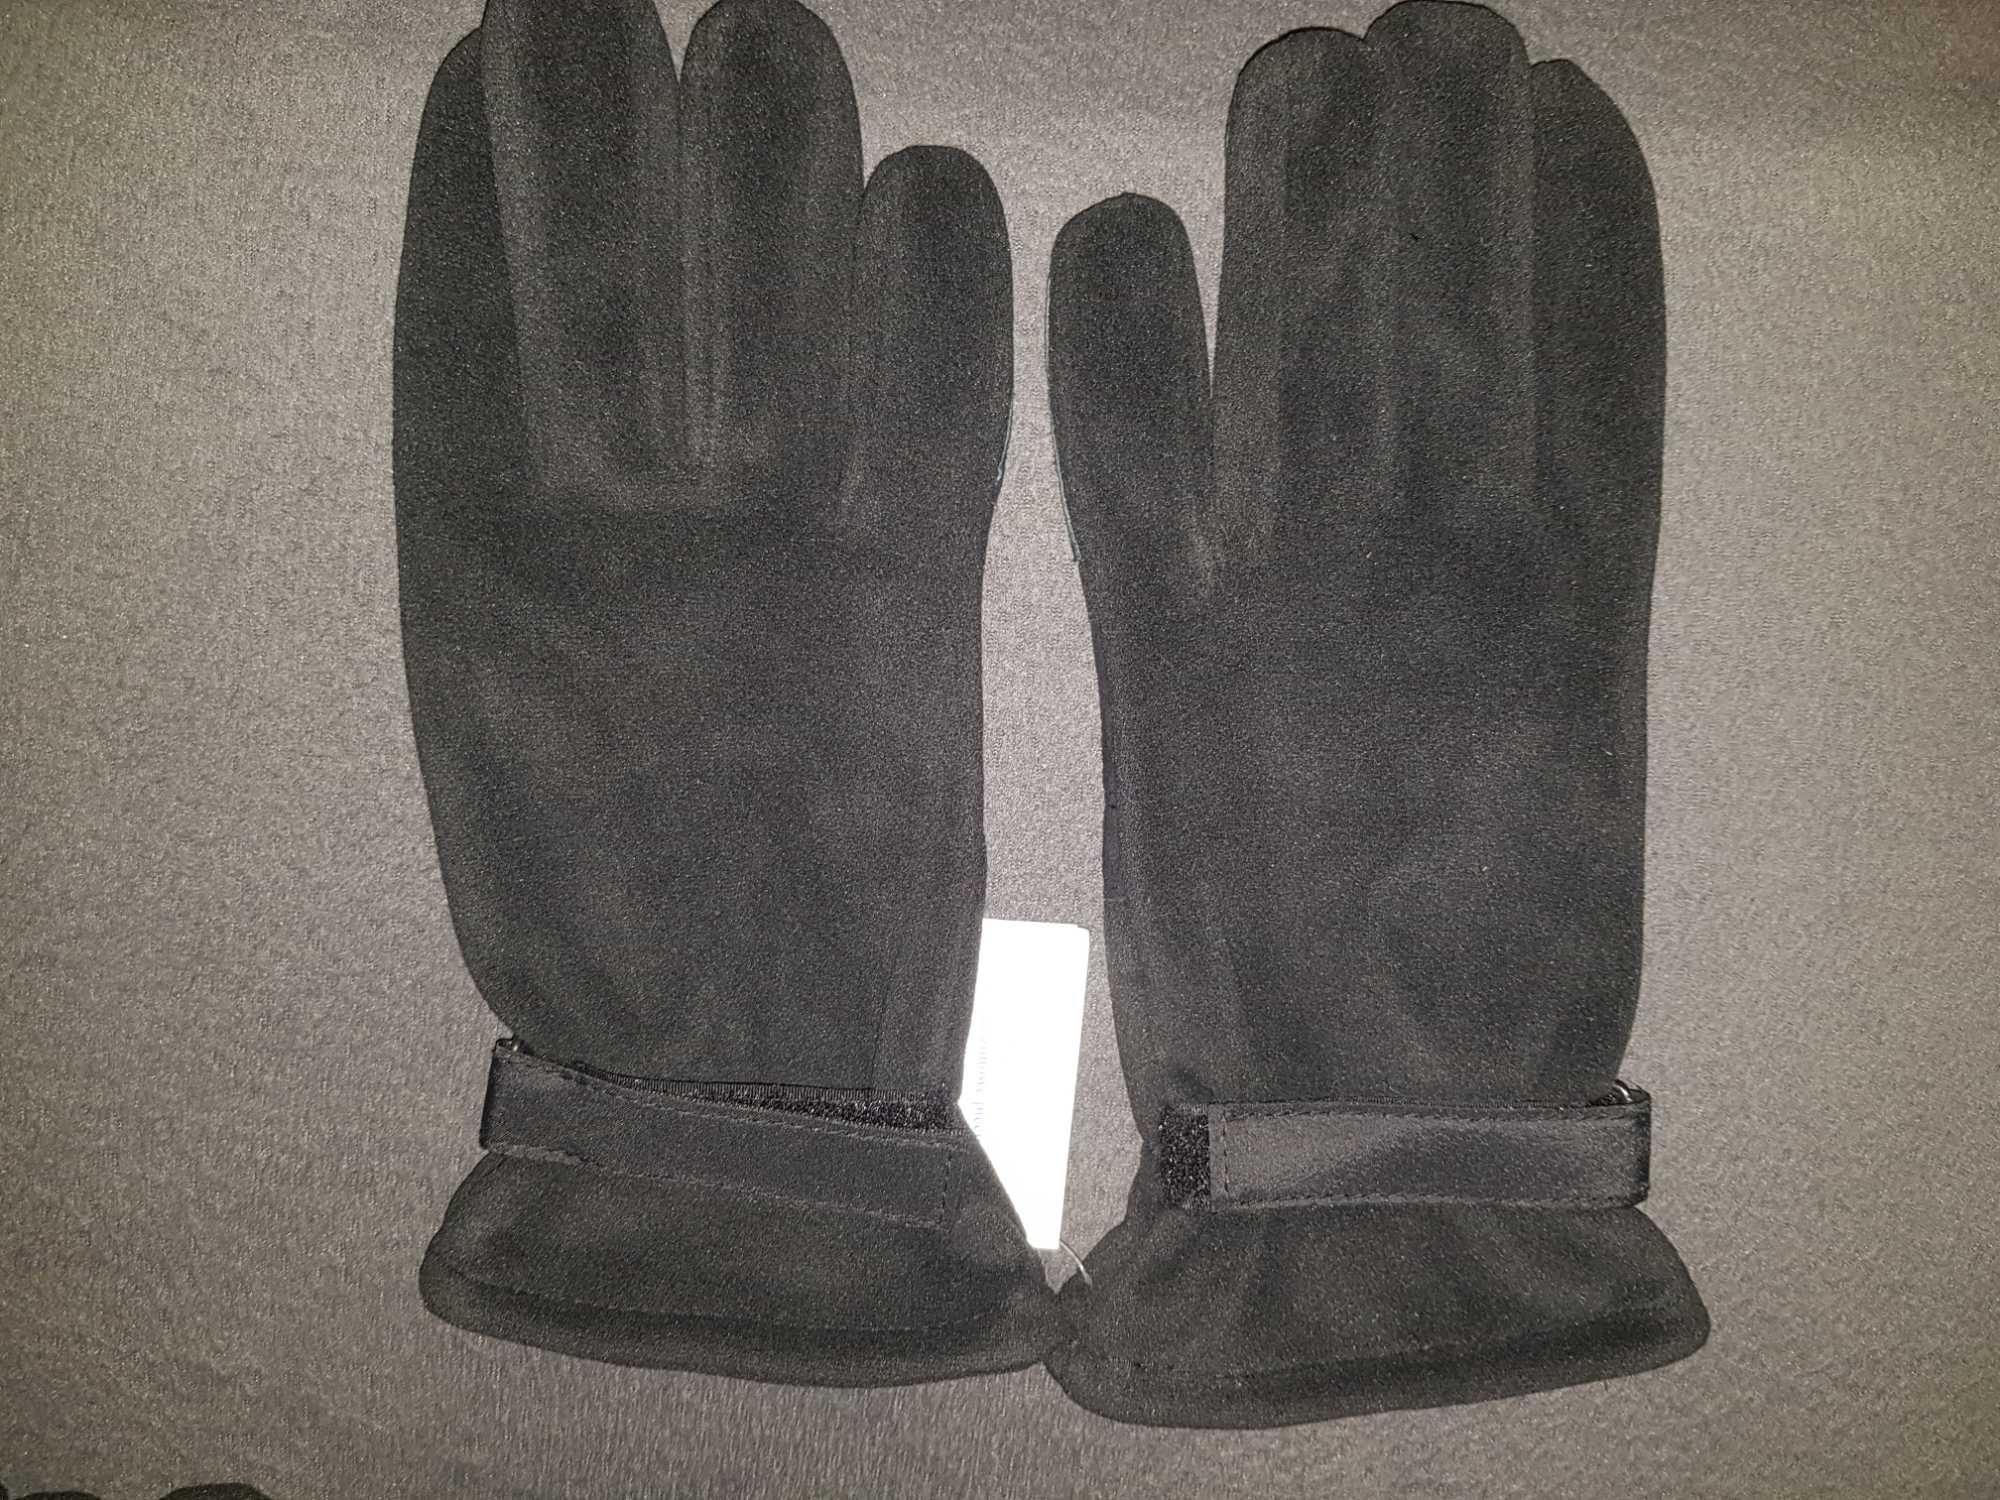 Nowe rękawiczki zimowe pięciopalcowe wz 615/MON roz 24 kolor czarny